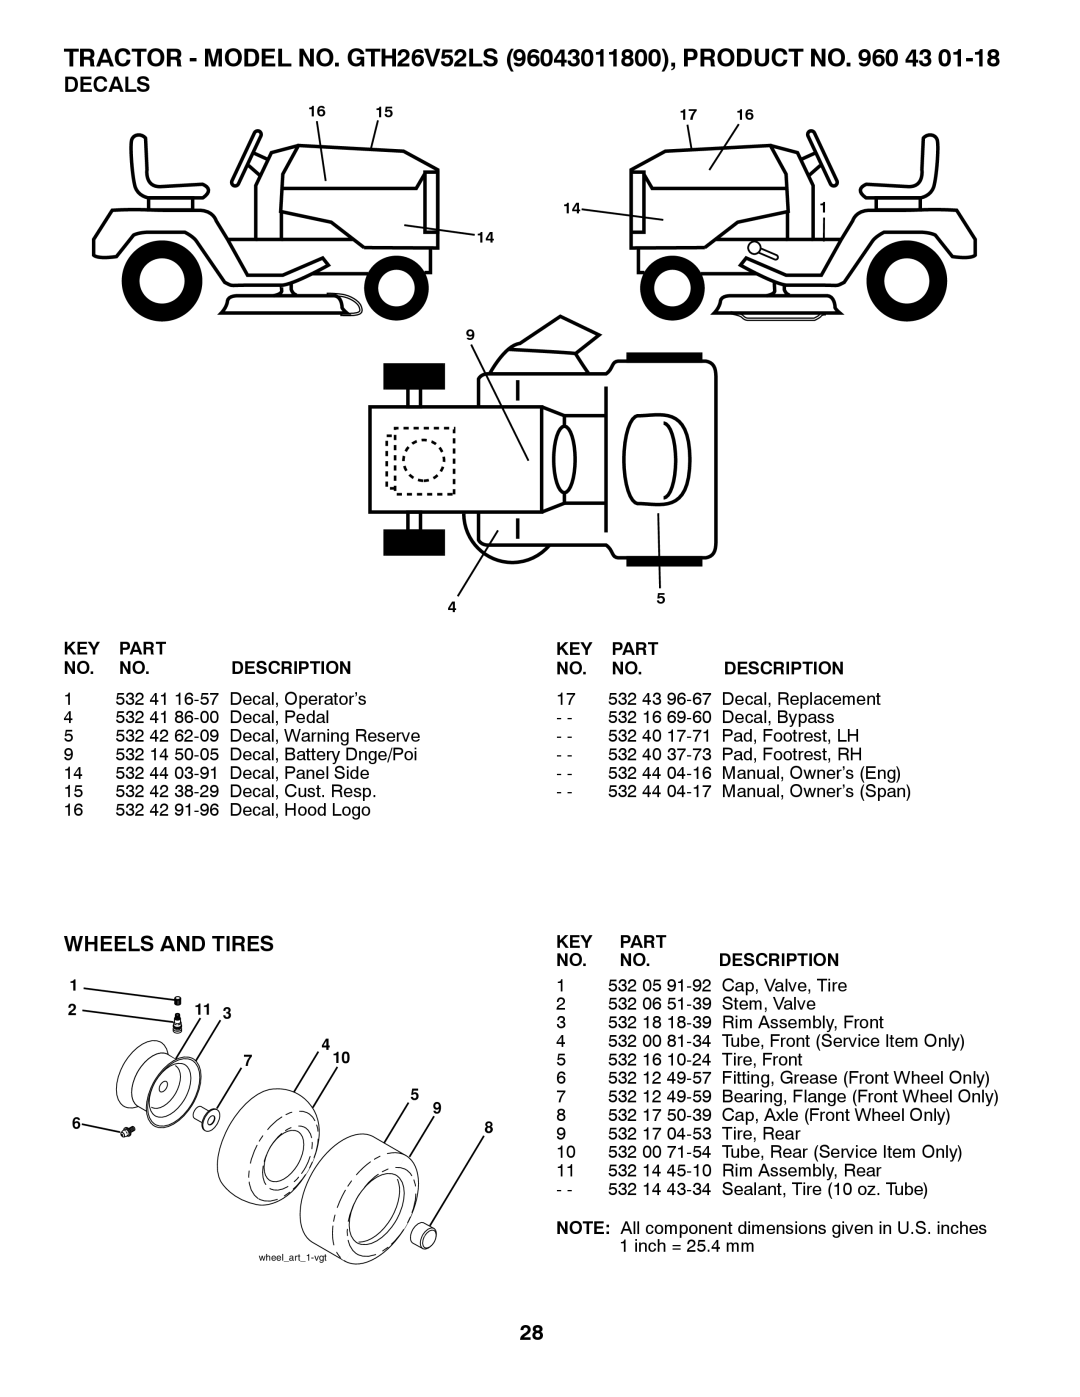 Husqvarna TRACTOR - MODEL NO. GTH26V52LS 96043011800, PRODUCT NO, Decals, Wheels And Tires, Part, Description 